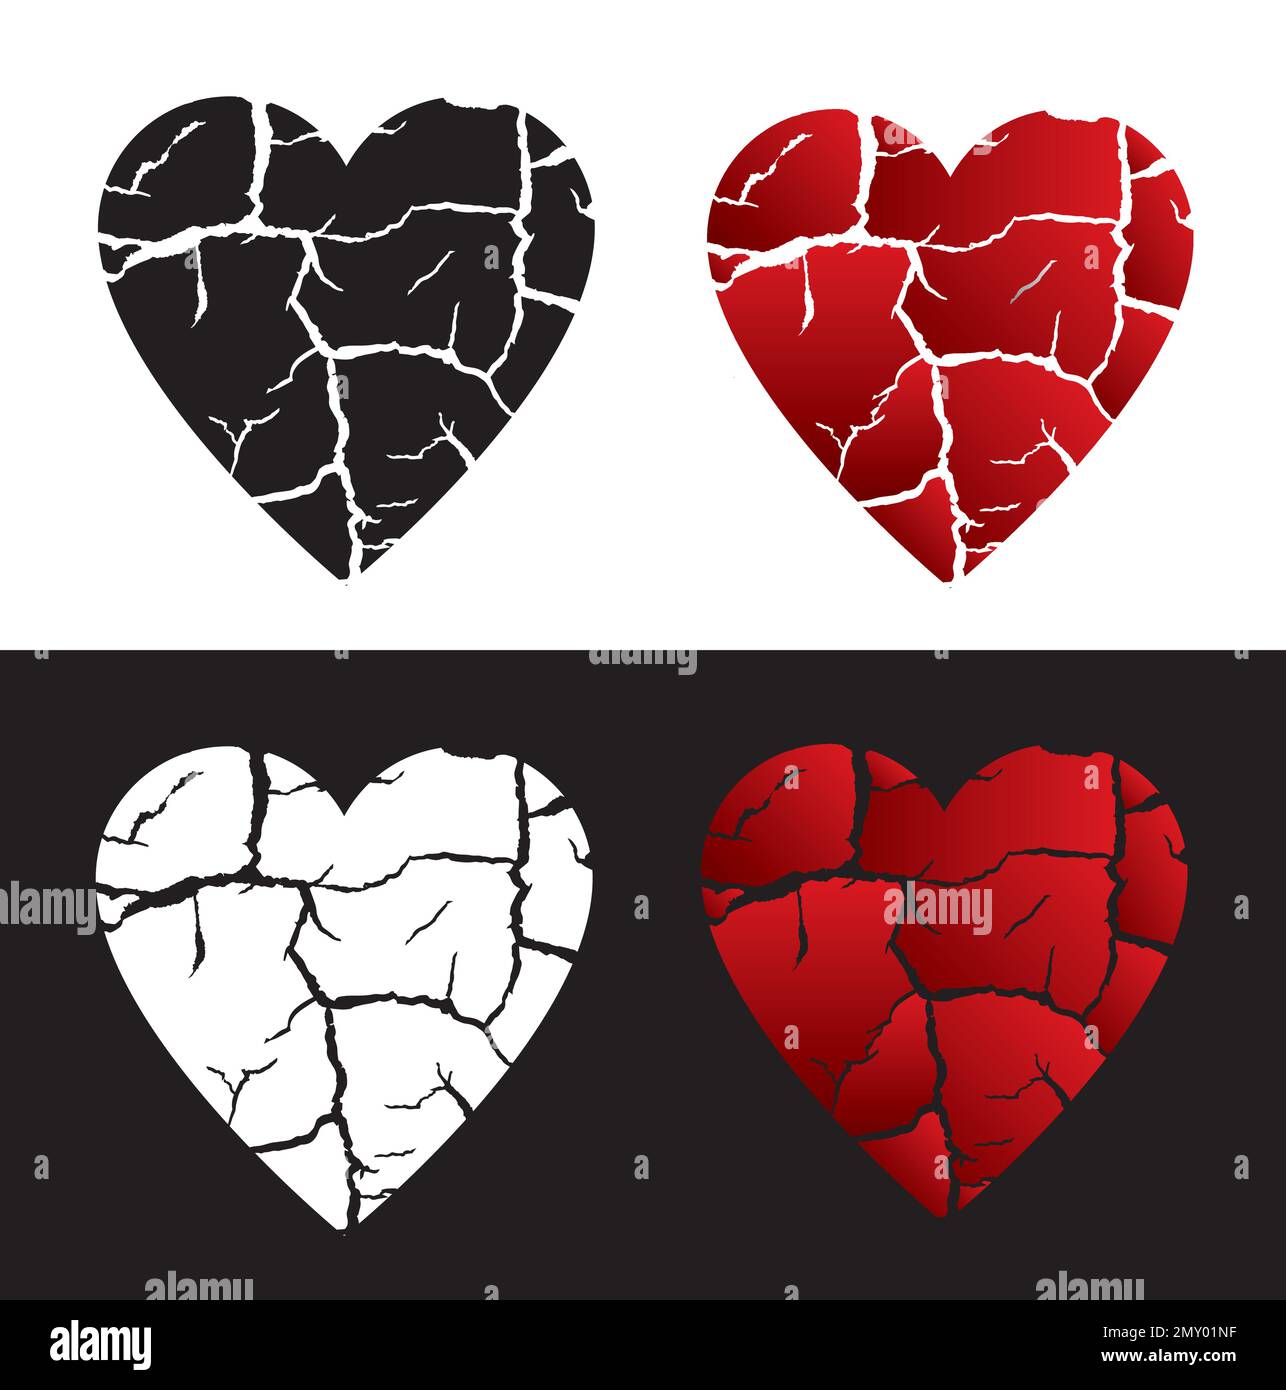 Simbolo del cuore incrinato, amore infelice. Quattro simboli a forma di cuore che simboleggiano la fine dell'amore. Vettore disponibile. Illustrazione Vettoriale